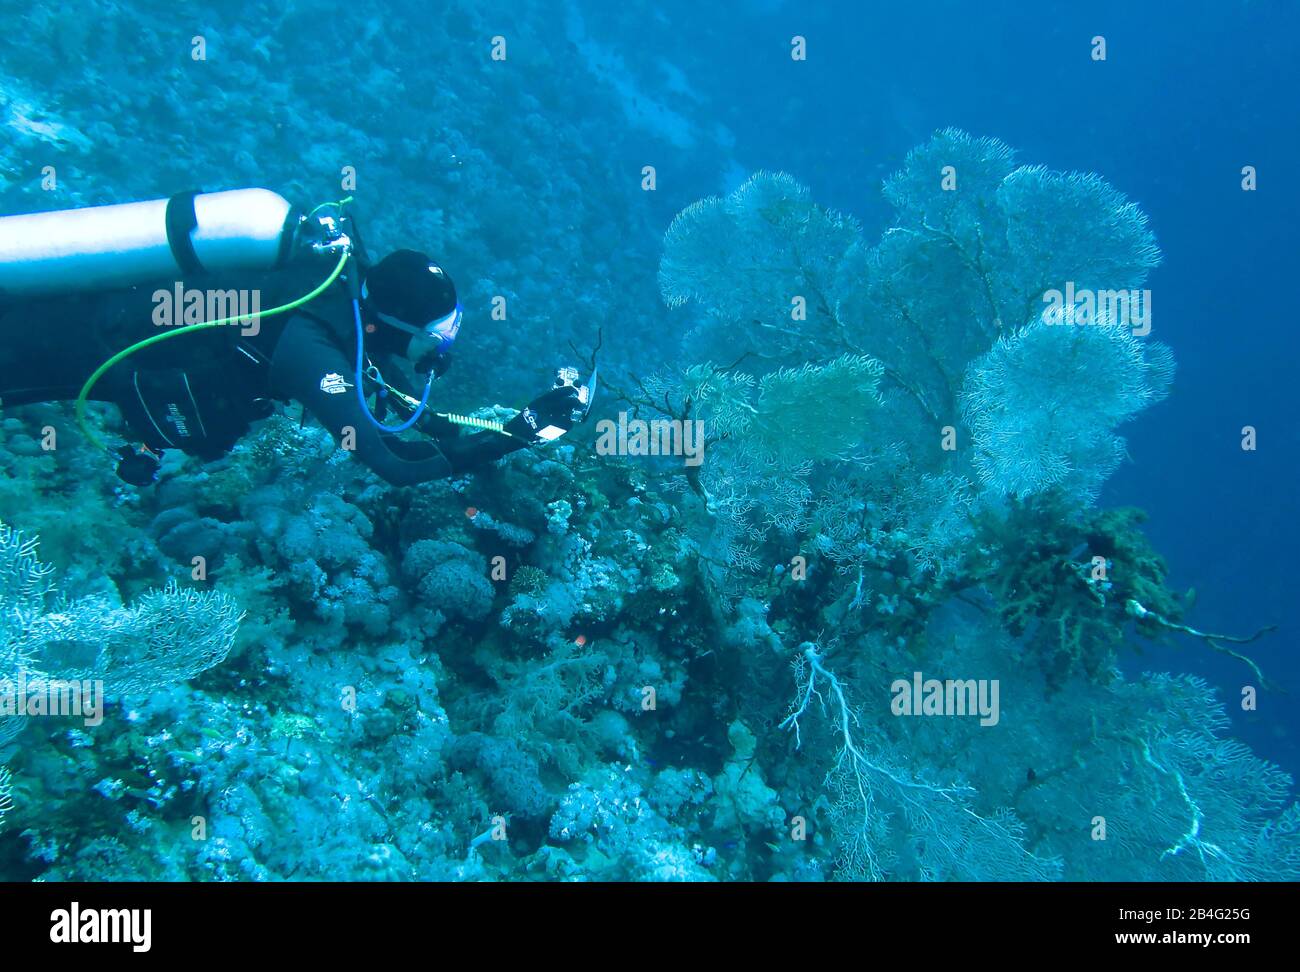 Taucher, Gorgonienkoralle (Octocorallia), Islas Brother, Rotes Meer, Aegypten / Ägypten Foto de stock